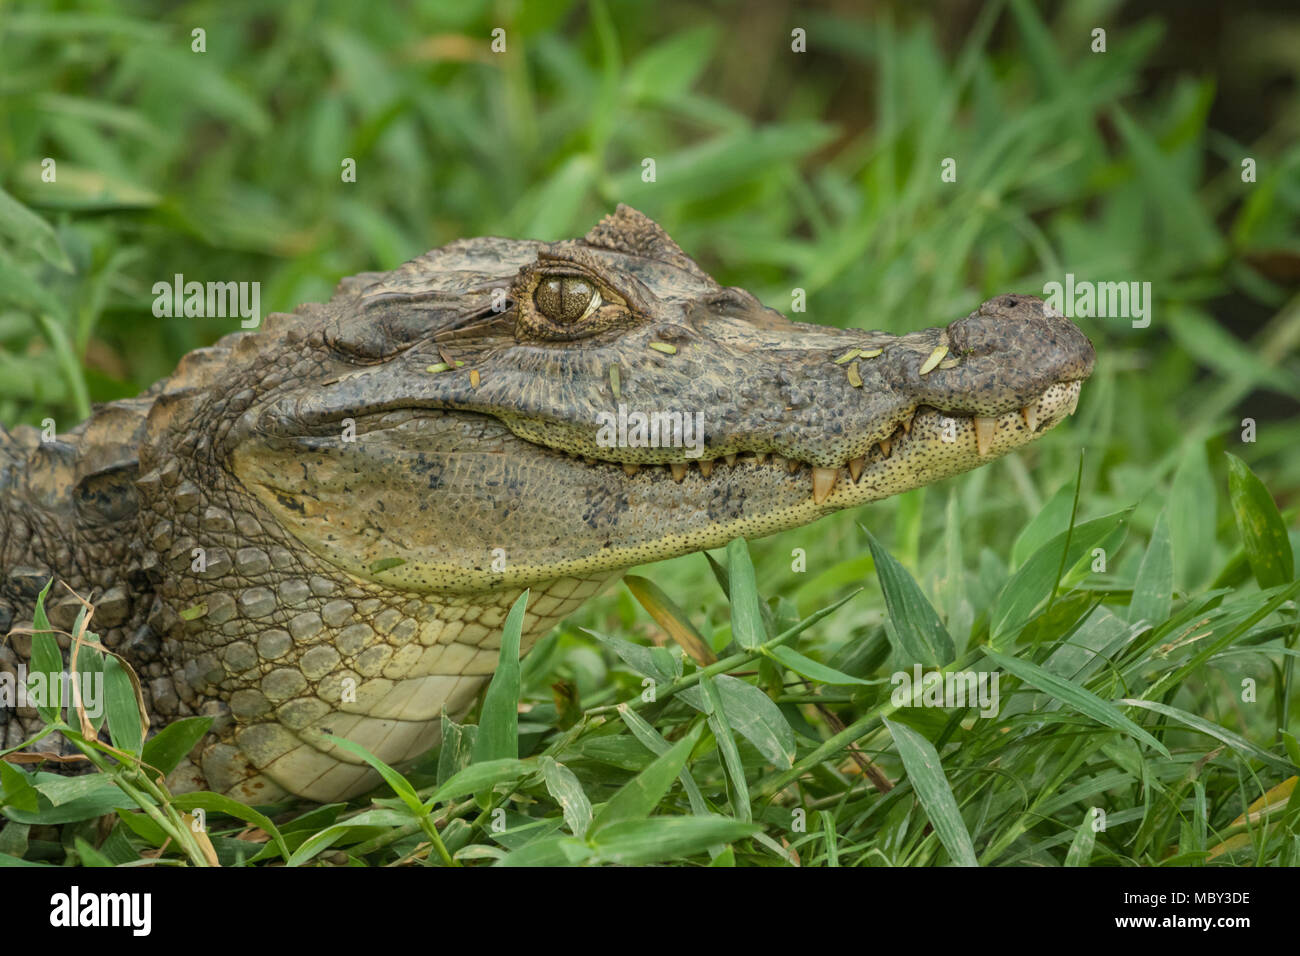 Alligator sauvage dans l'herbe, Waslala Nicaragua Banque D'Images